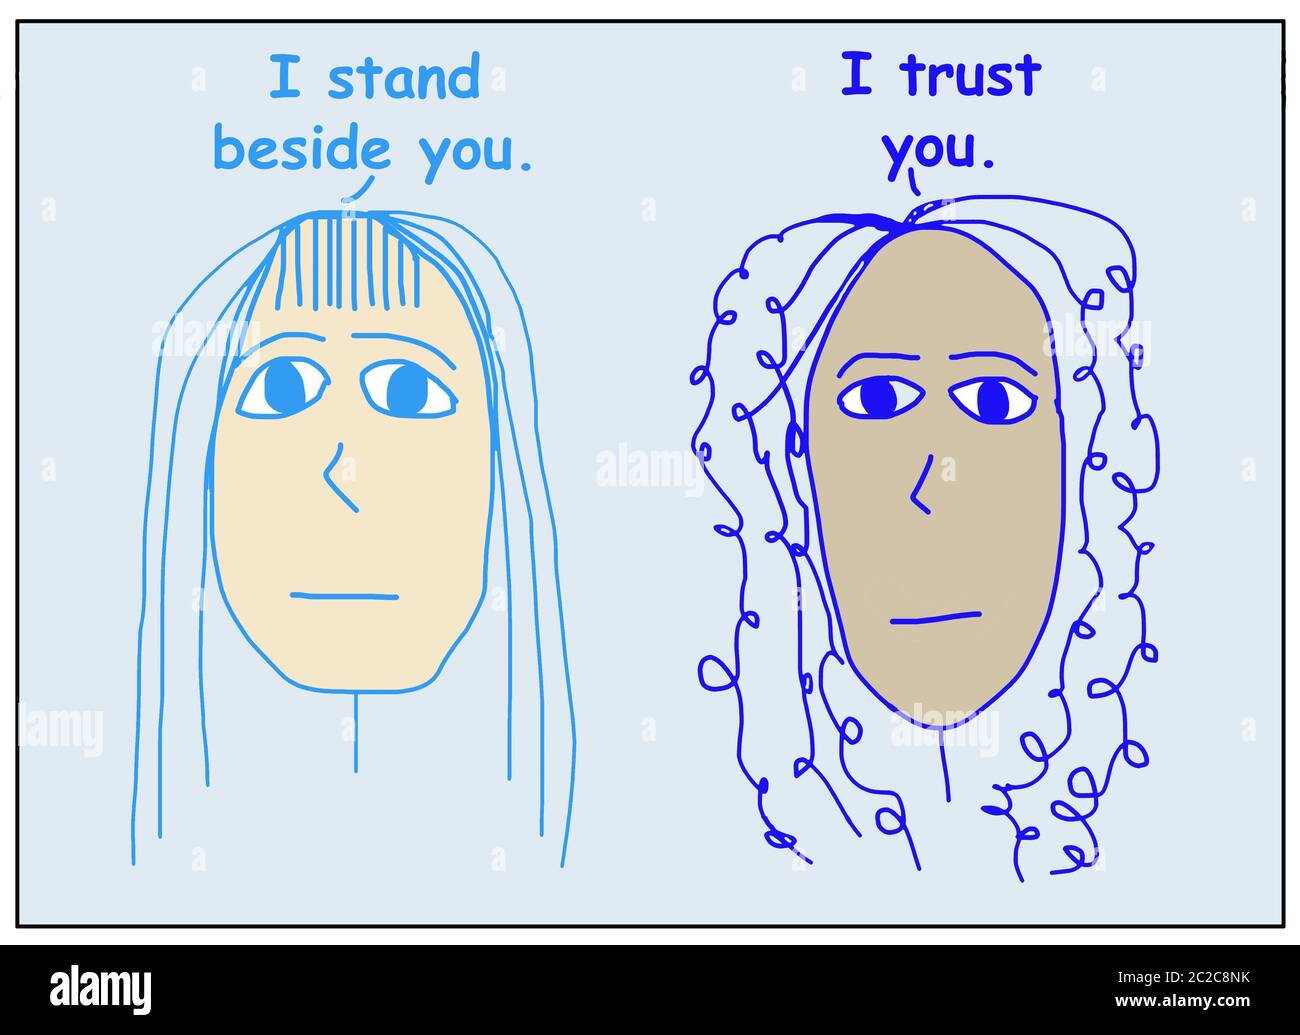 Farbige Karikatur von zwei ethnisch verschiedenen Frauen reden und sagen, ich stehe neben Ihnen und ich vertraue Ihnen. Stockfoto